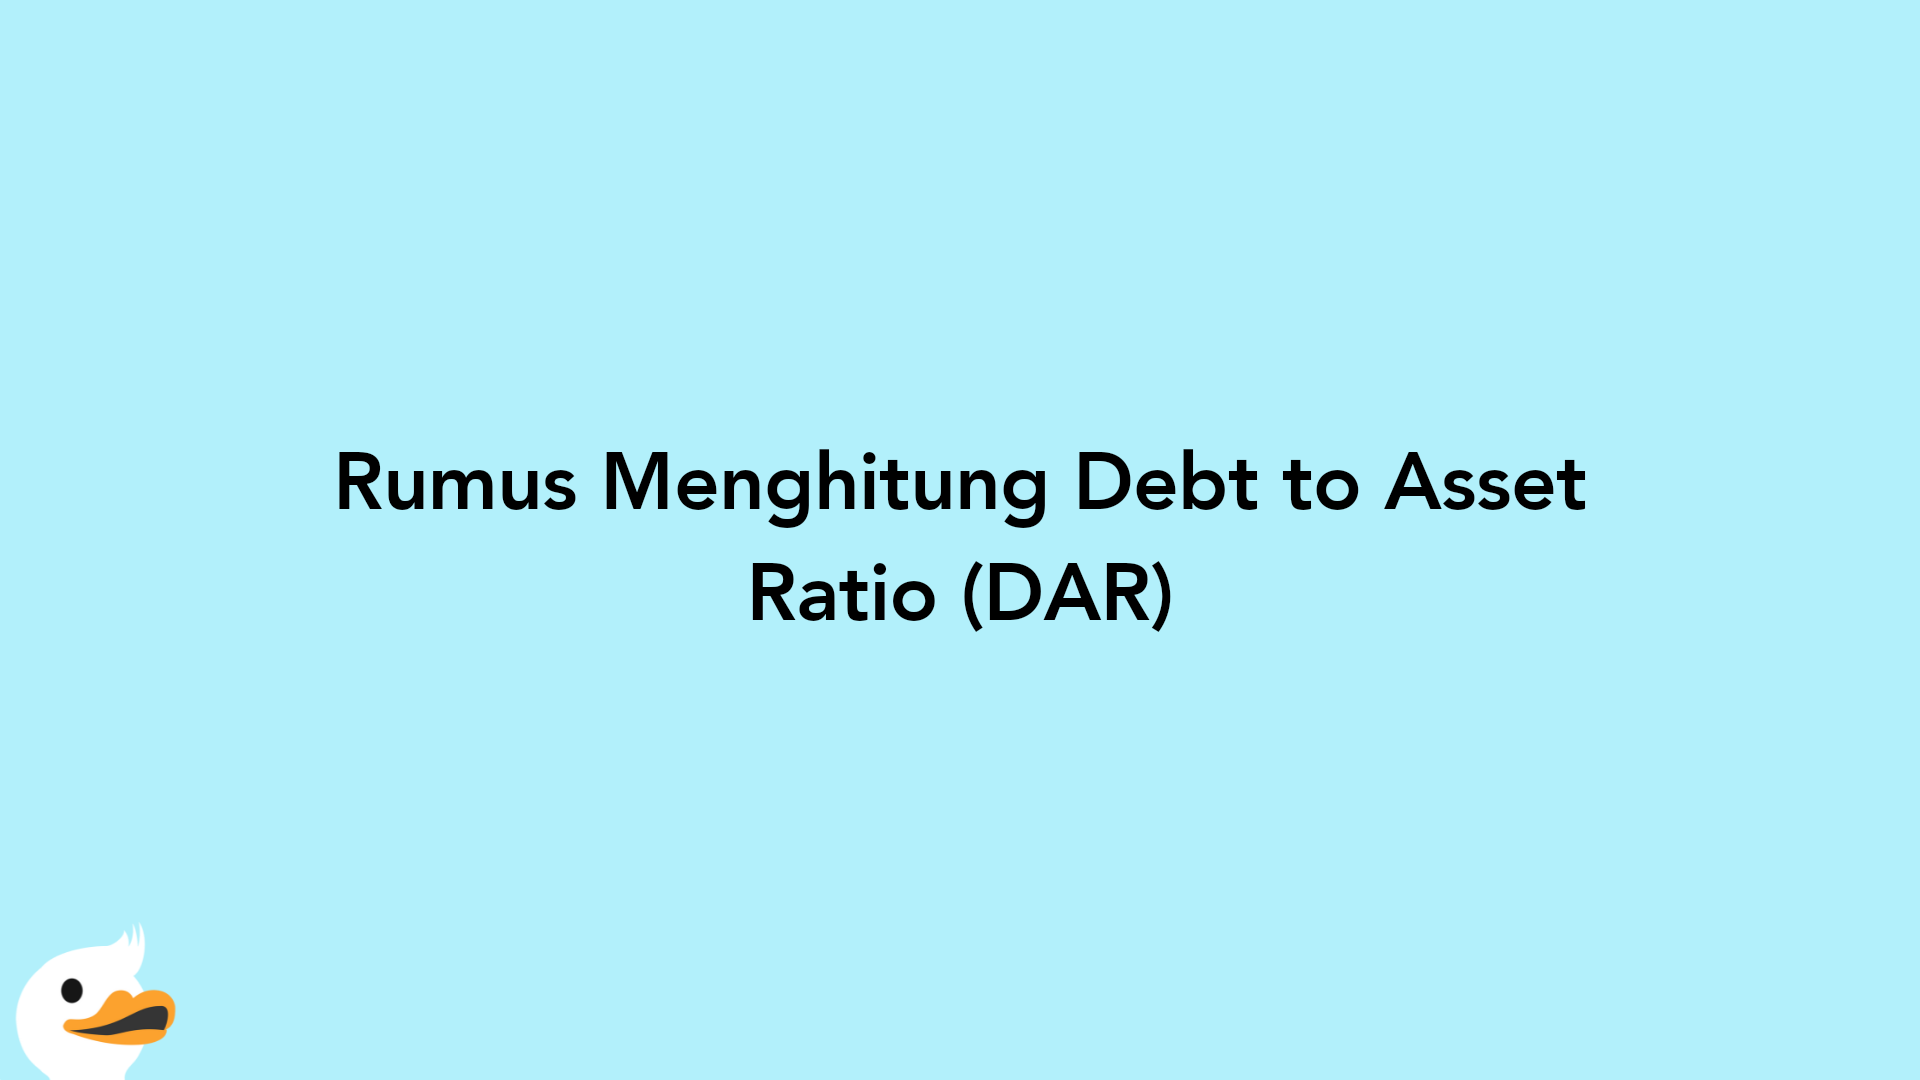 Rumus Menghitung Debt to Asset Ratio (DAR)